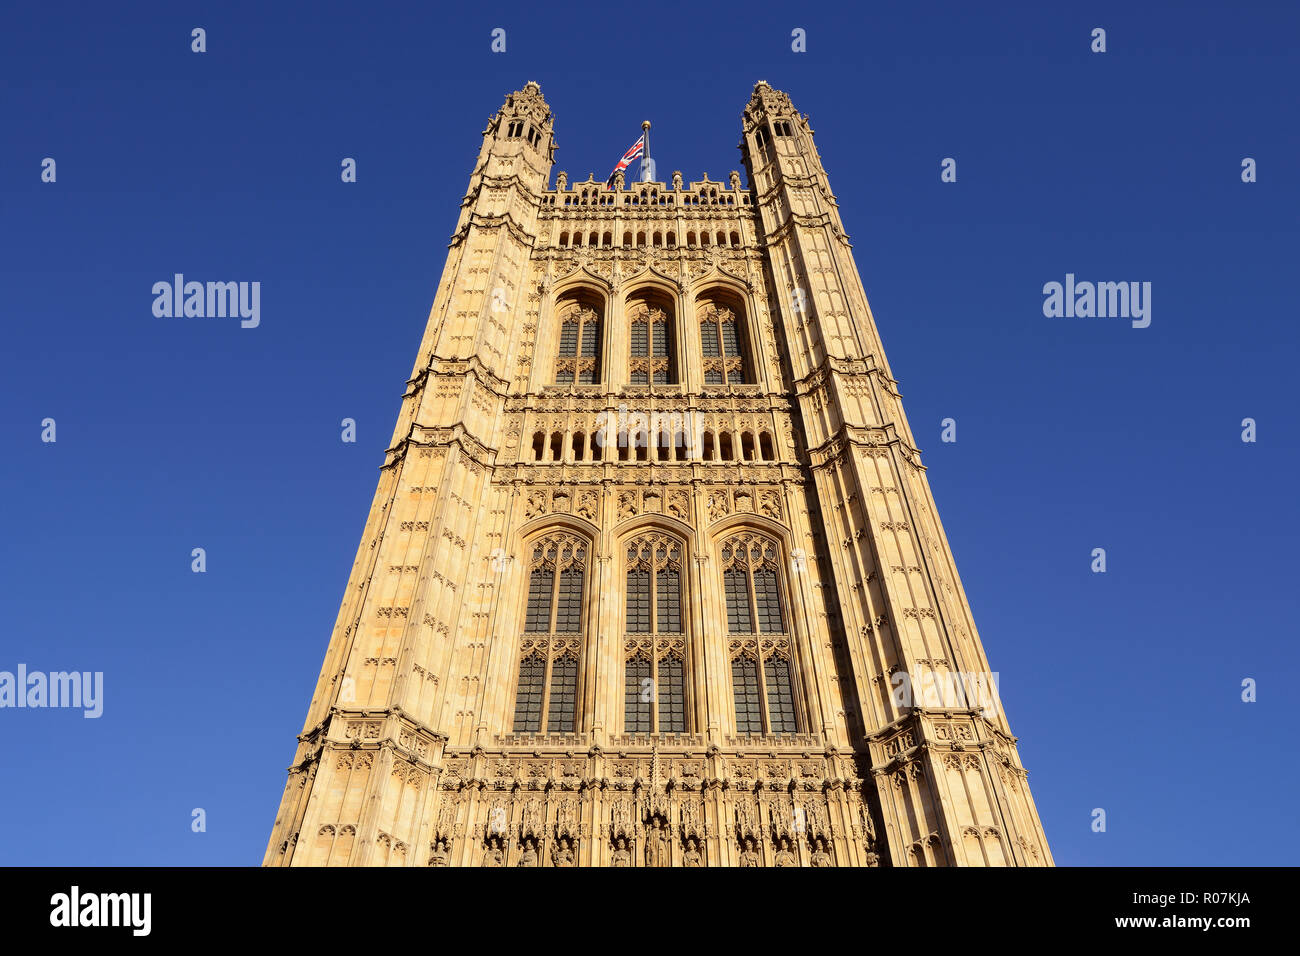 Torre de Victoria, las Casas del Parlamento, el Palacio de Westminster, London, England, Reino Unido Foto de stock